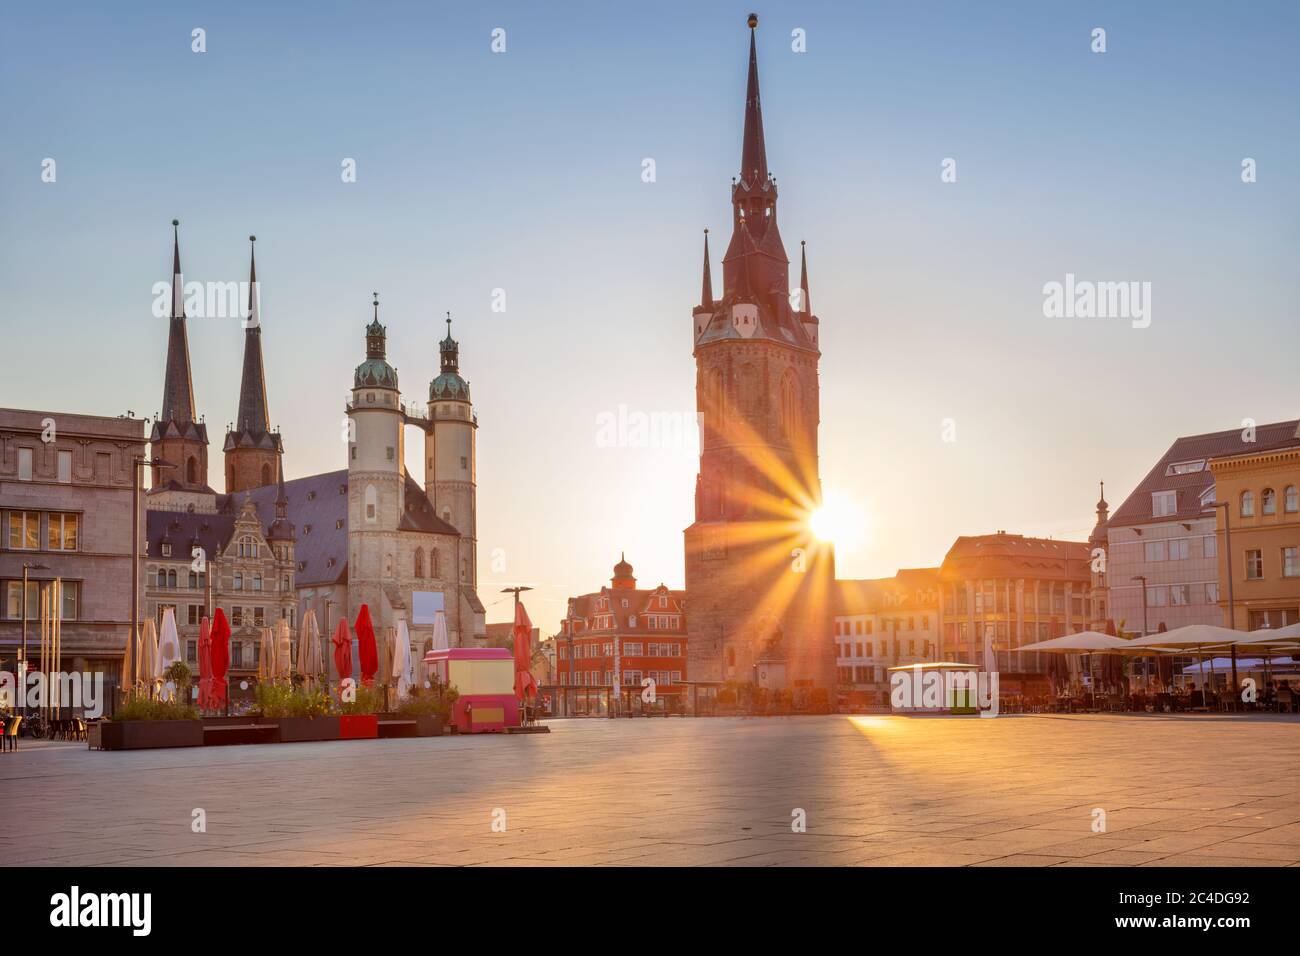 Halle, Deutschland. Stadtbild der historischen Innenstadt von Halle (Saale) mit dem Roten Turm und dem Marktplatz während des schönen Sommeruntergangs. Stockfoto